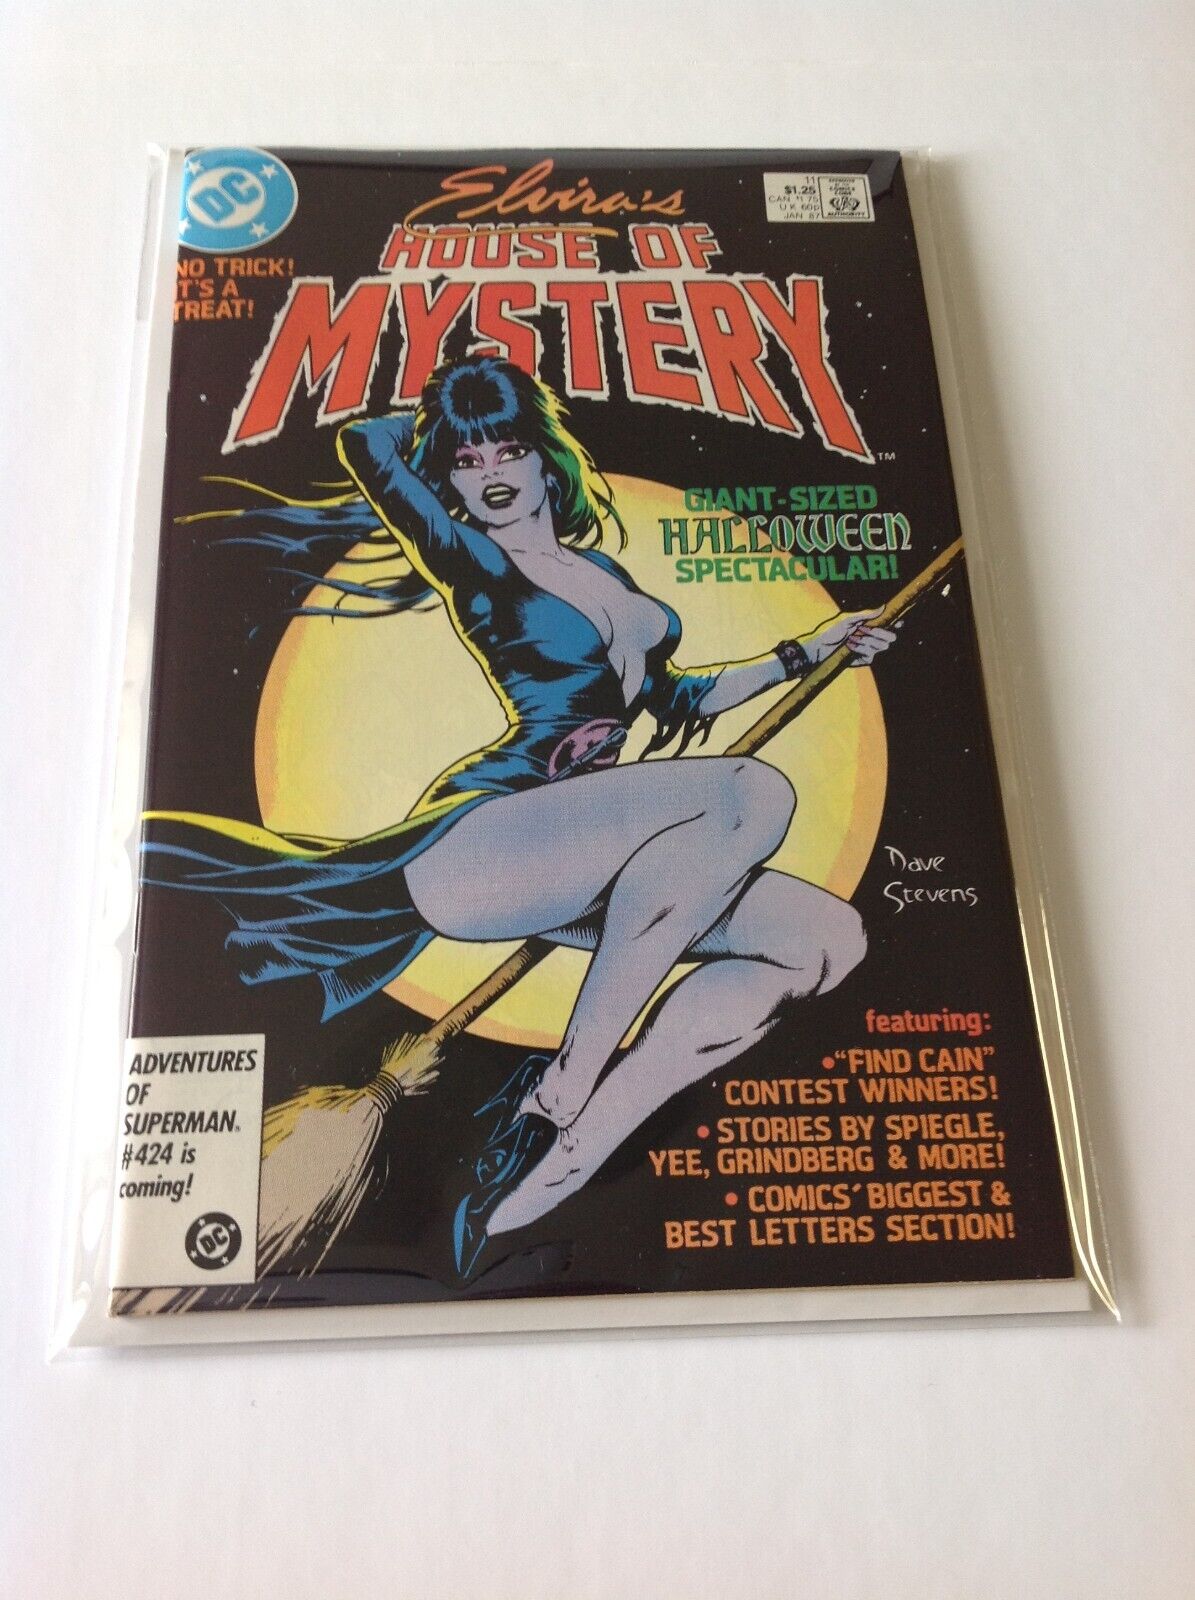 Elvira's House Of Mystery #11 1987 Dave Stevens Classic Good Girl Art Cover